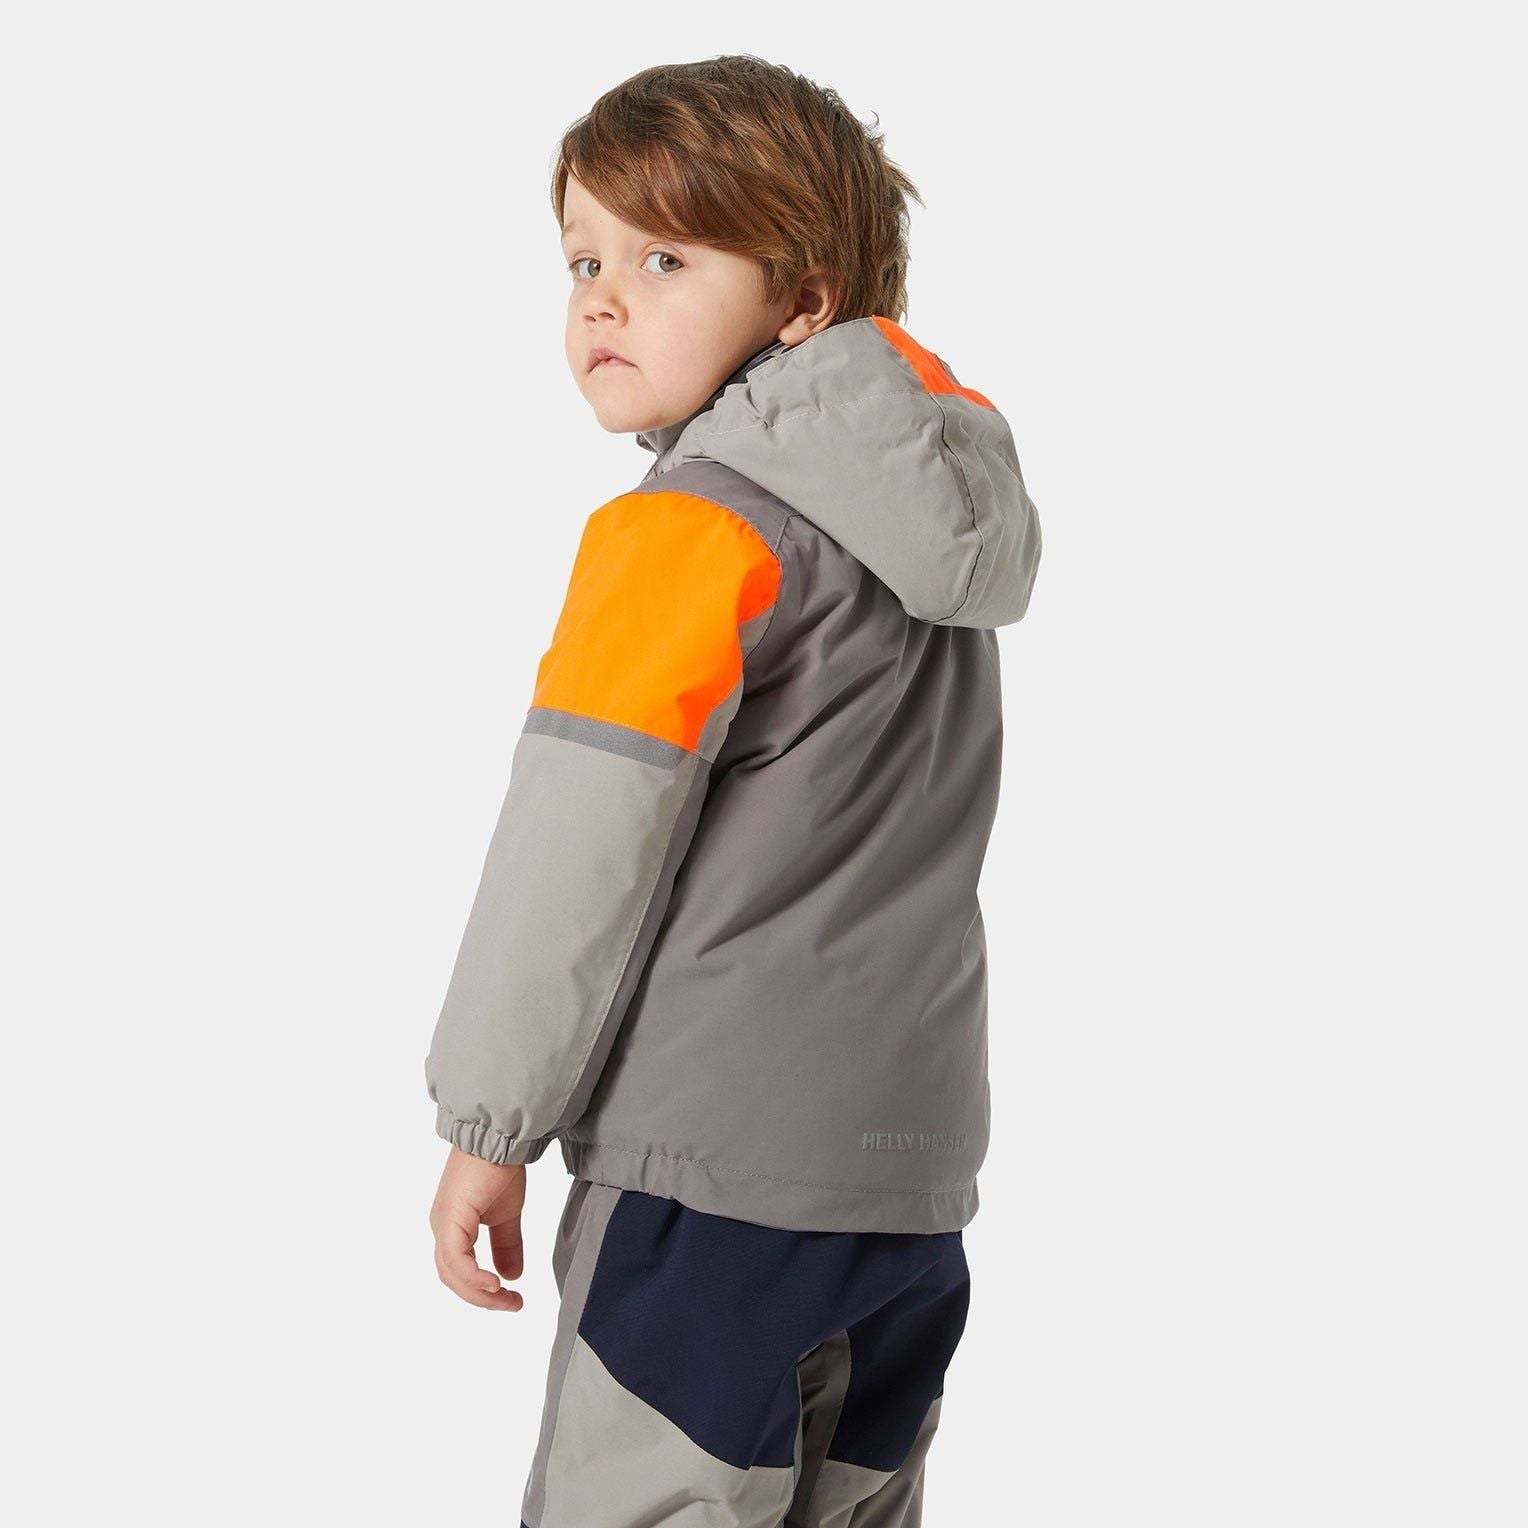 Helly Hansen - Kids Rider 2.0 Insulated Jacket in Concrete-SQ1856157